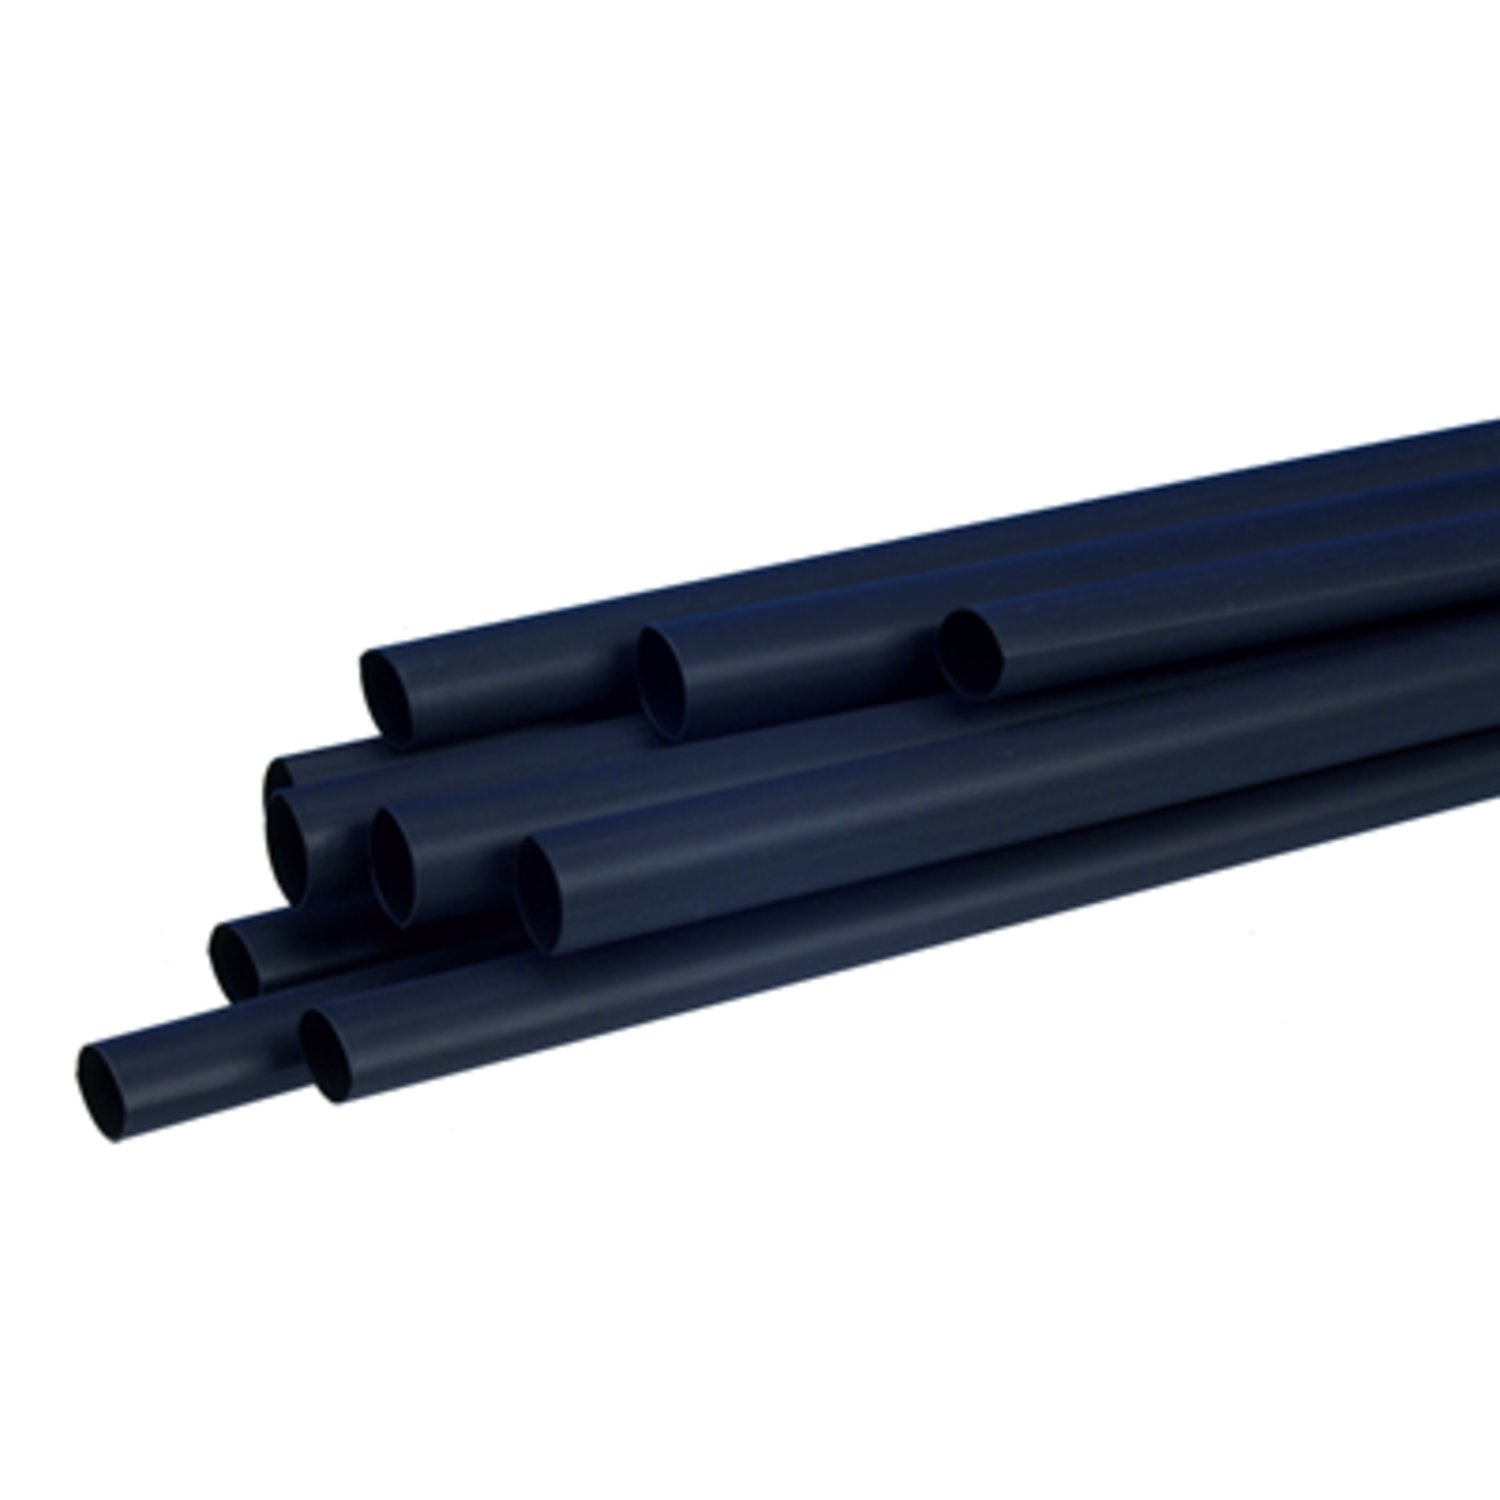 7100025341 - 3M SFTW-203 1/4" Heat Shrink Tubing Polyolefin, Black, 6.0/2.0 mm, 61 m
Roll